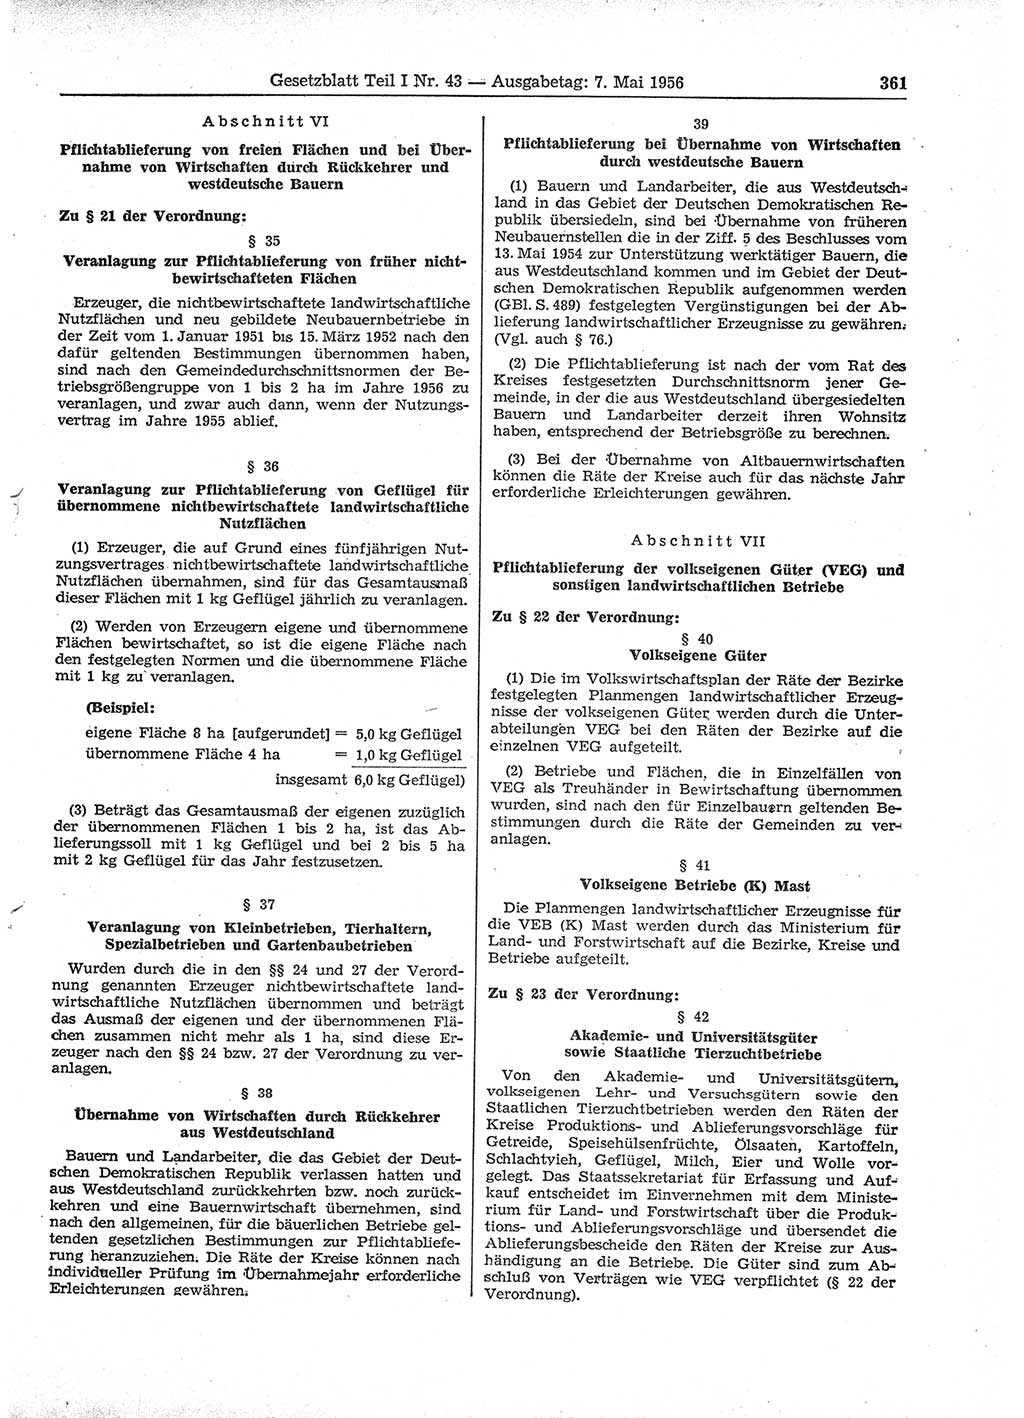 Gesetzblatt (GBl.) der Deutschen Demokratischen Republik (DDR) Teil Ⅰ 1956, Seite 361 (GBl. DDR Ⅰ 1956, S. 361)